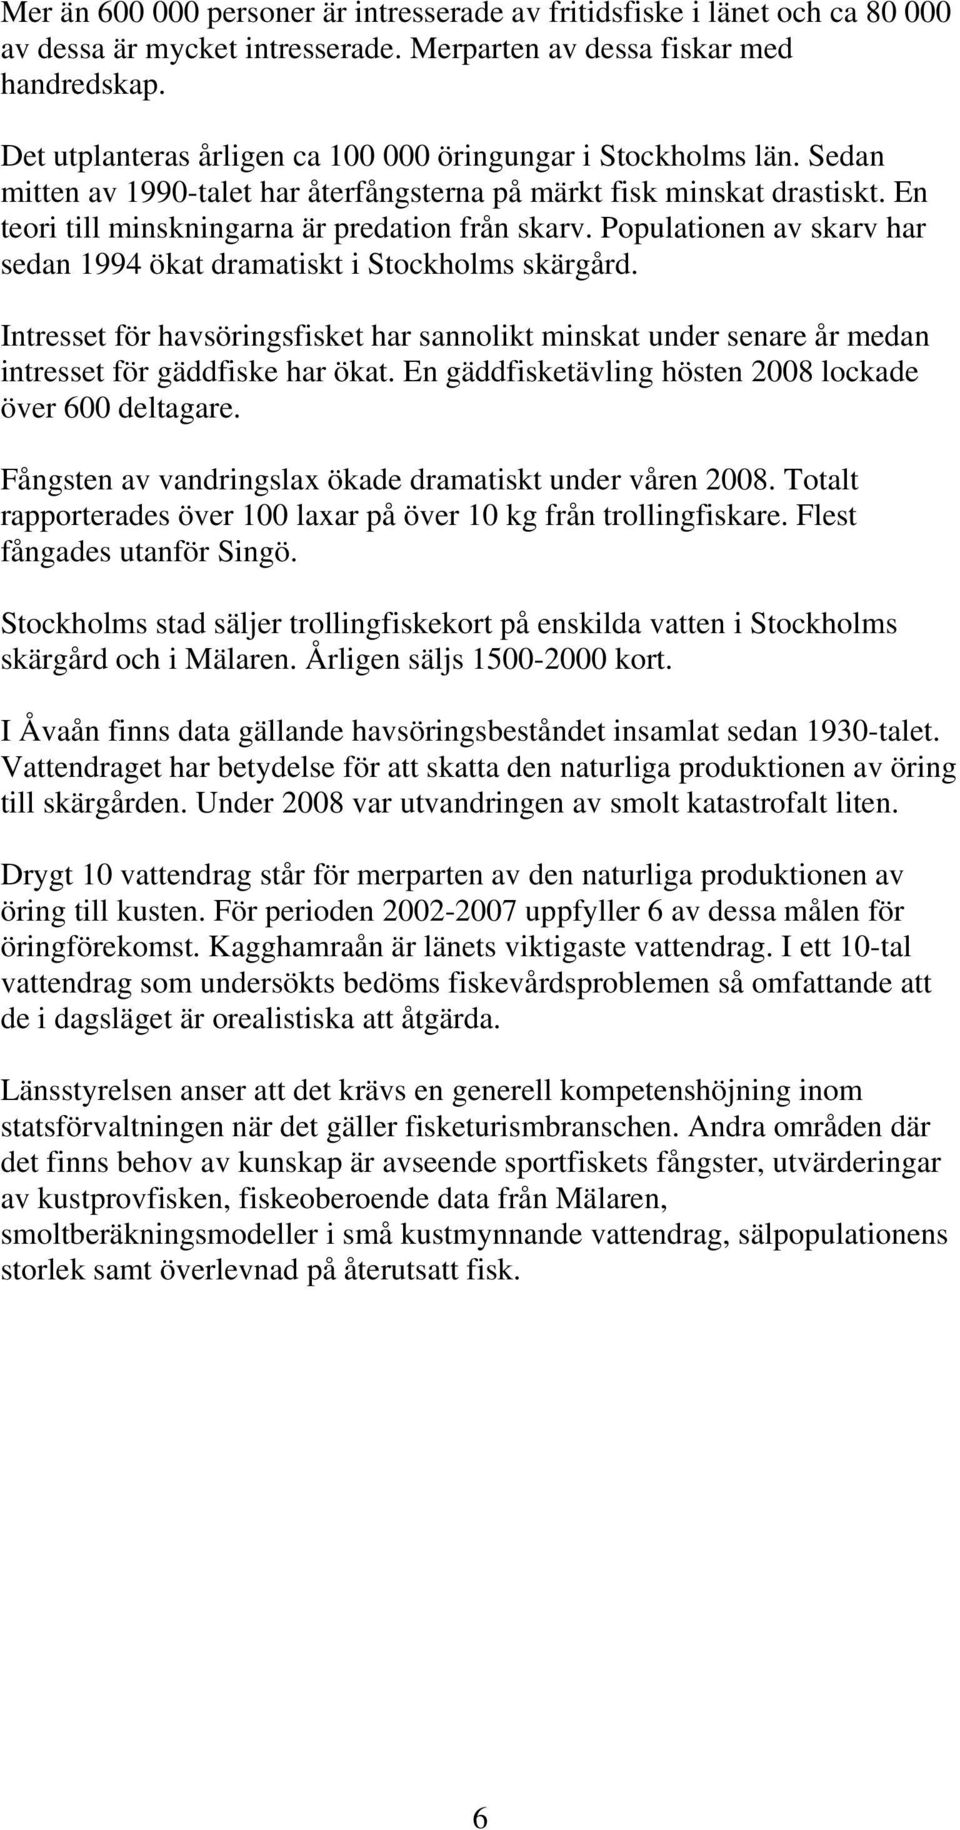 Populationen av skarv har sedan 1994 ökat dramatiskt i Stockholms skärgård. Intresset för havsöringsfisket har sannolikt minskat under senare år medan intresset för gäddfiske har ökat.